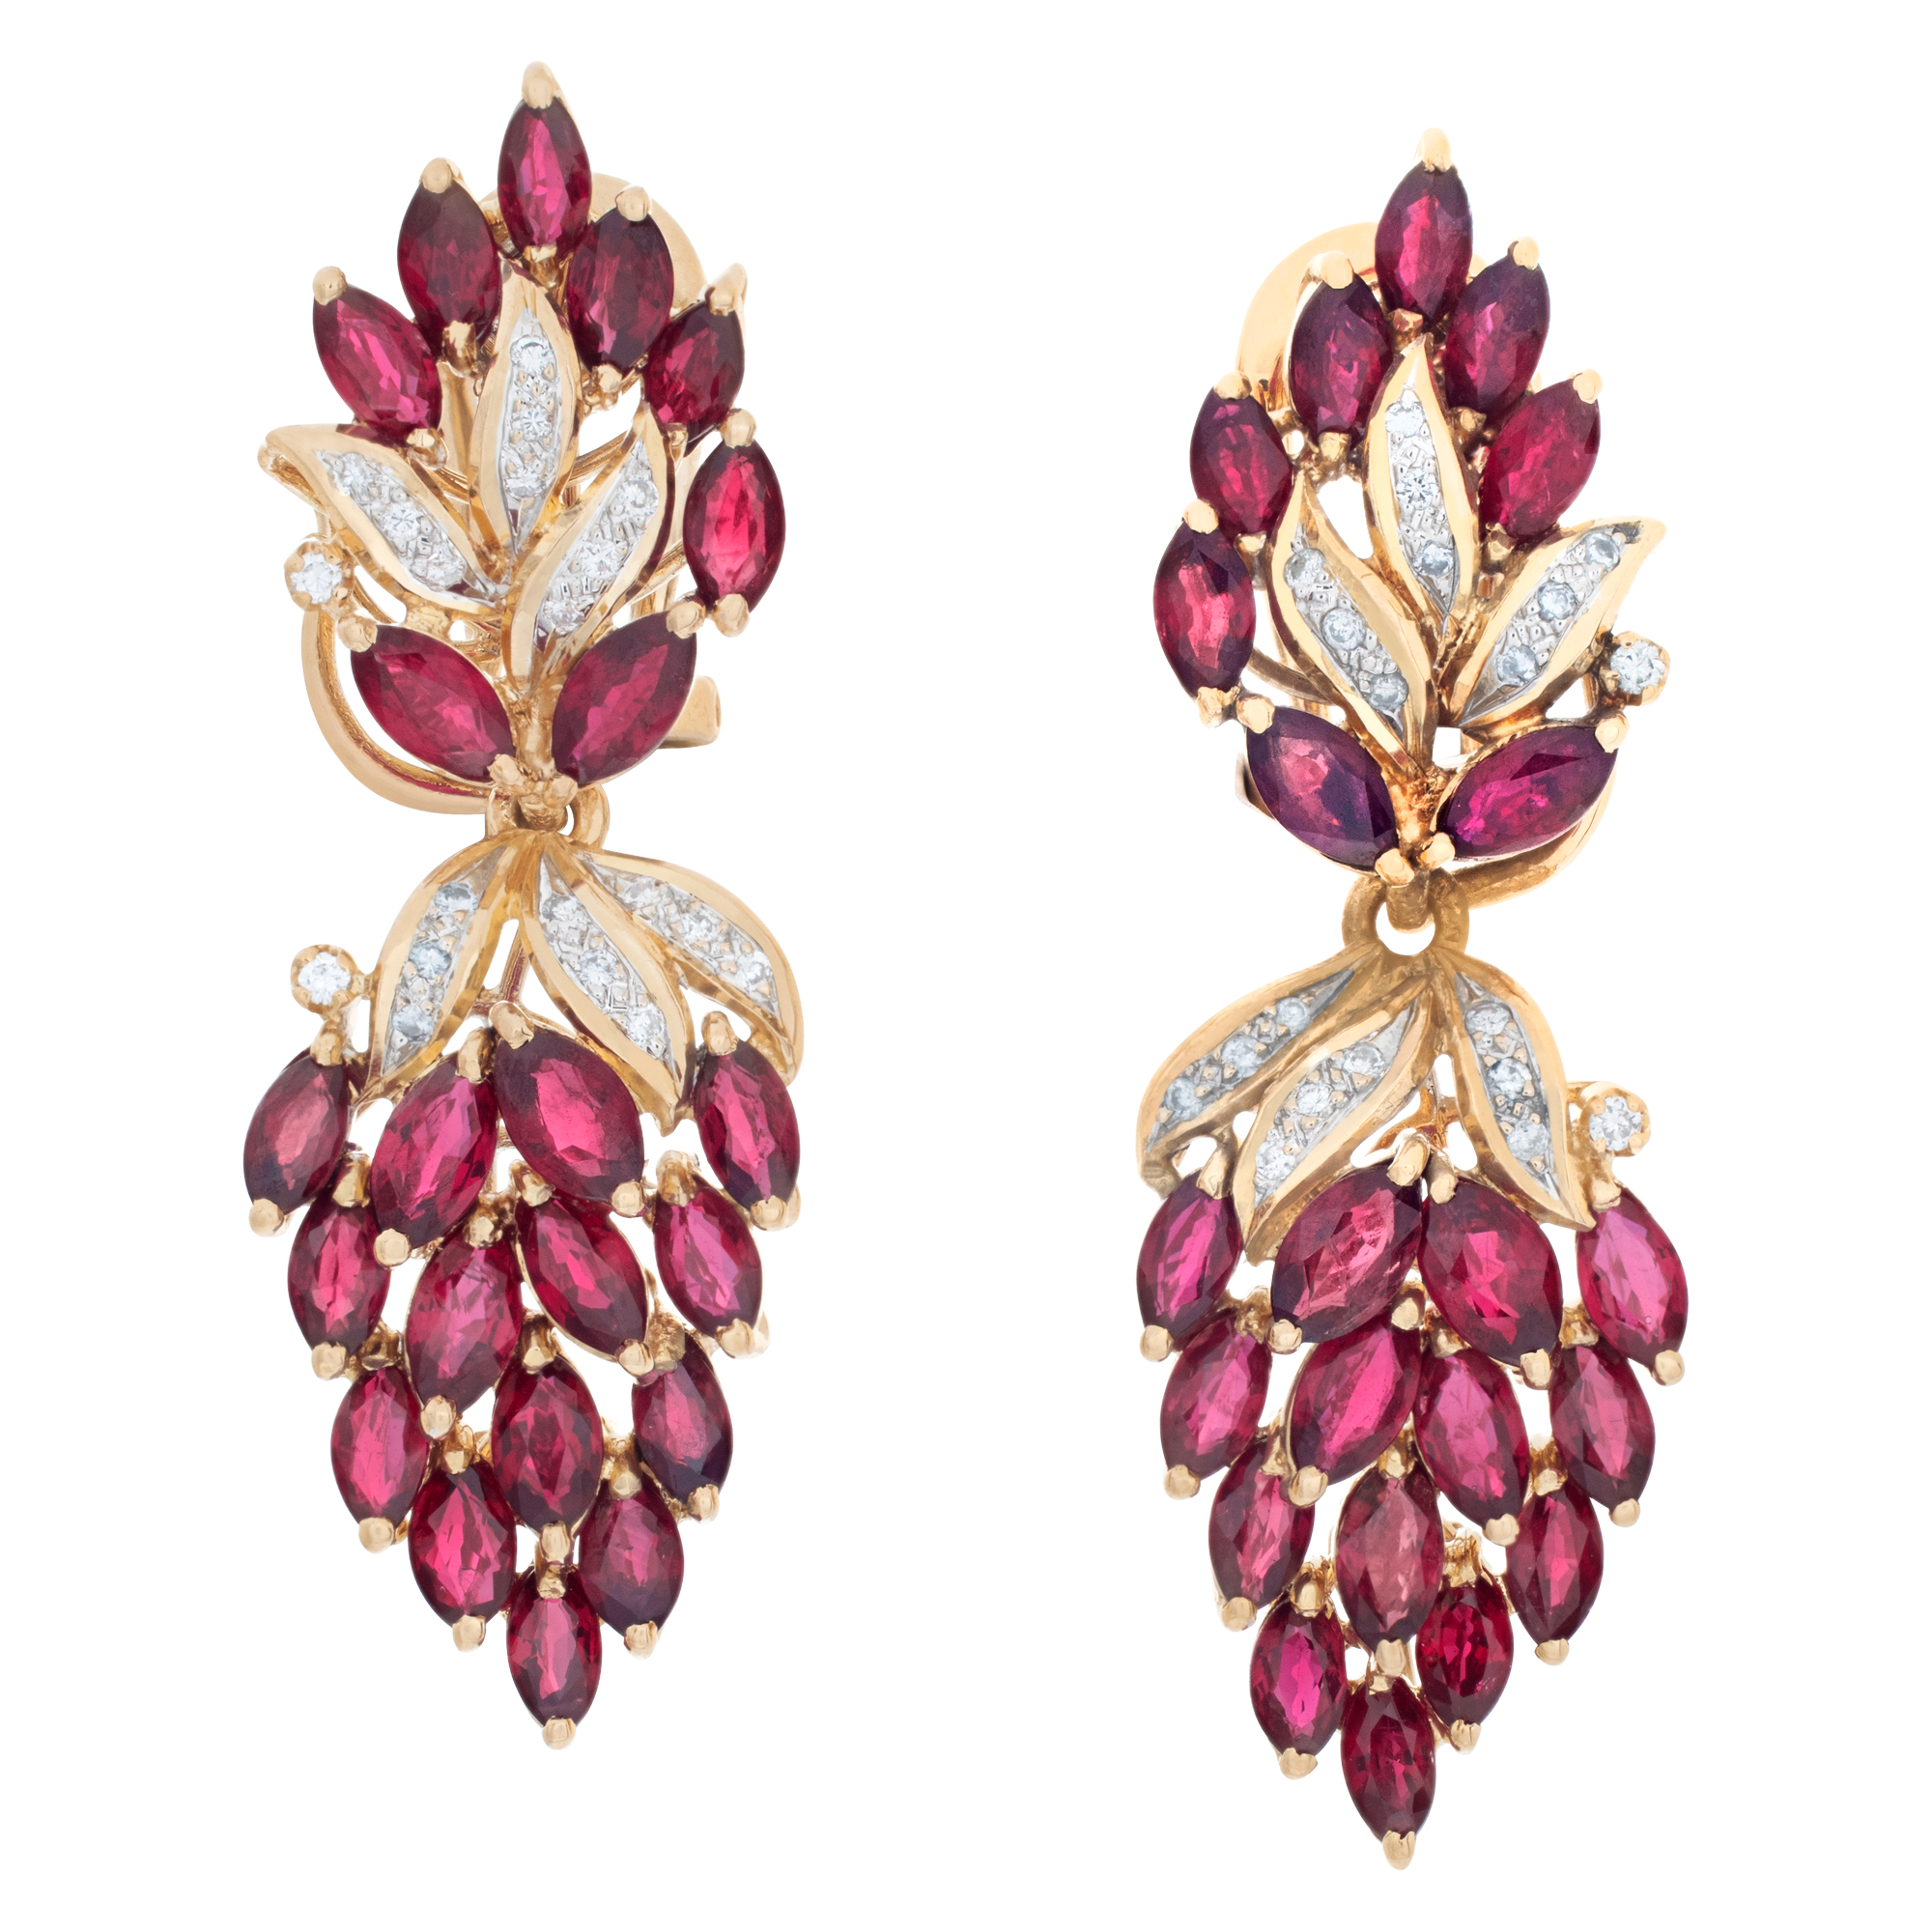 Ruby & diamond earrings in 18k image 1